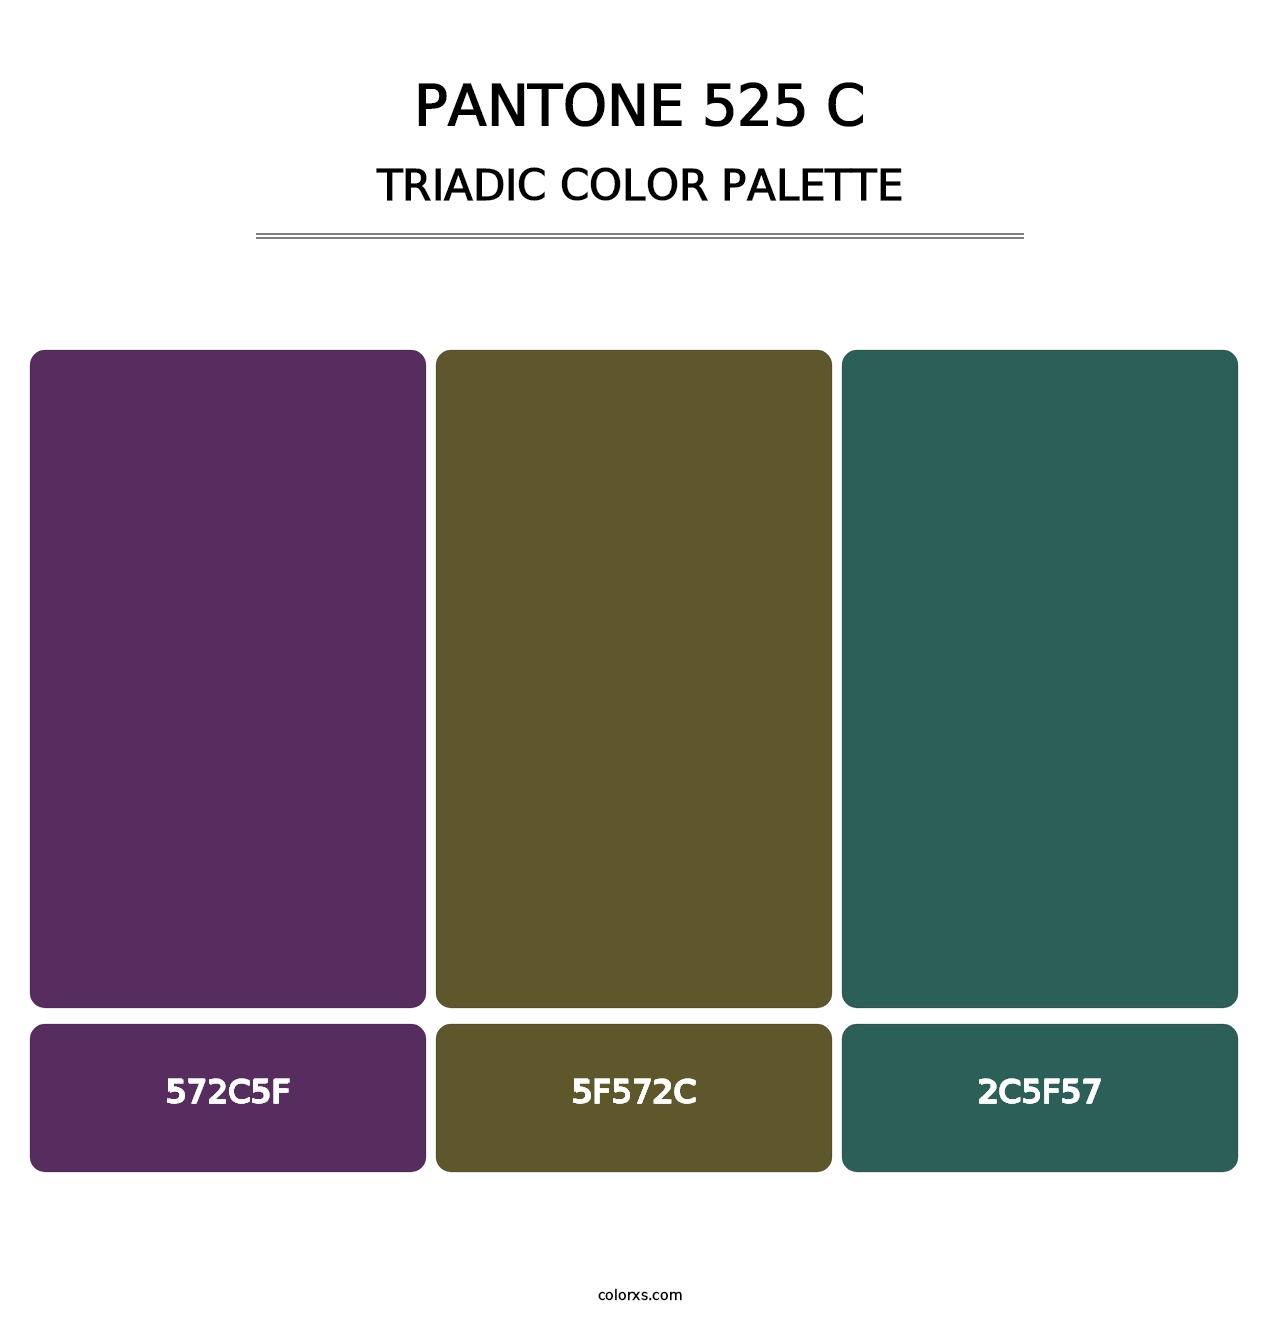 PANTONE 525 C - Triadic Color Palette